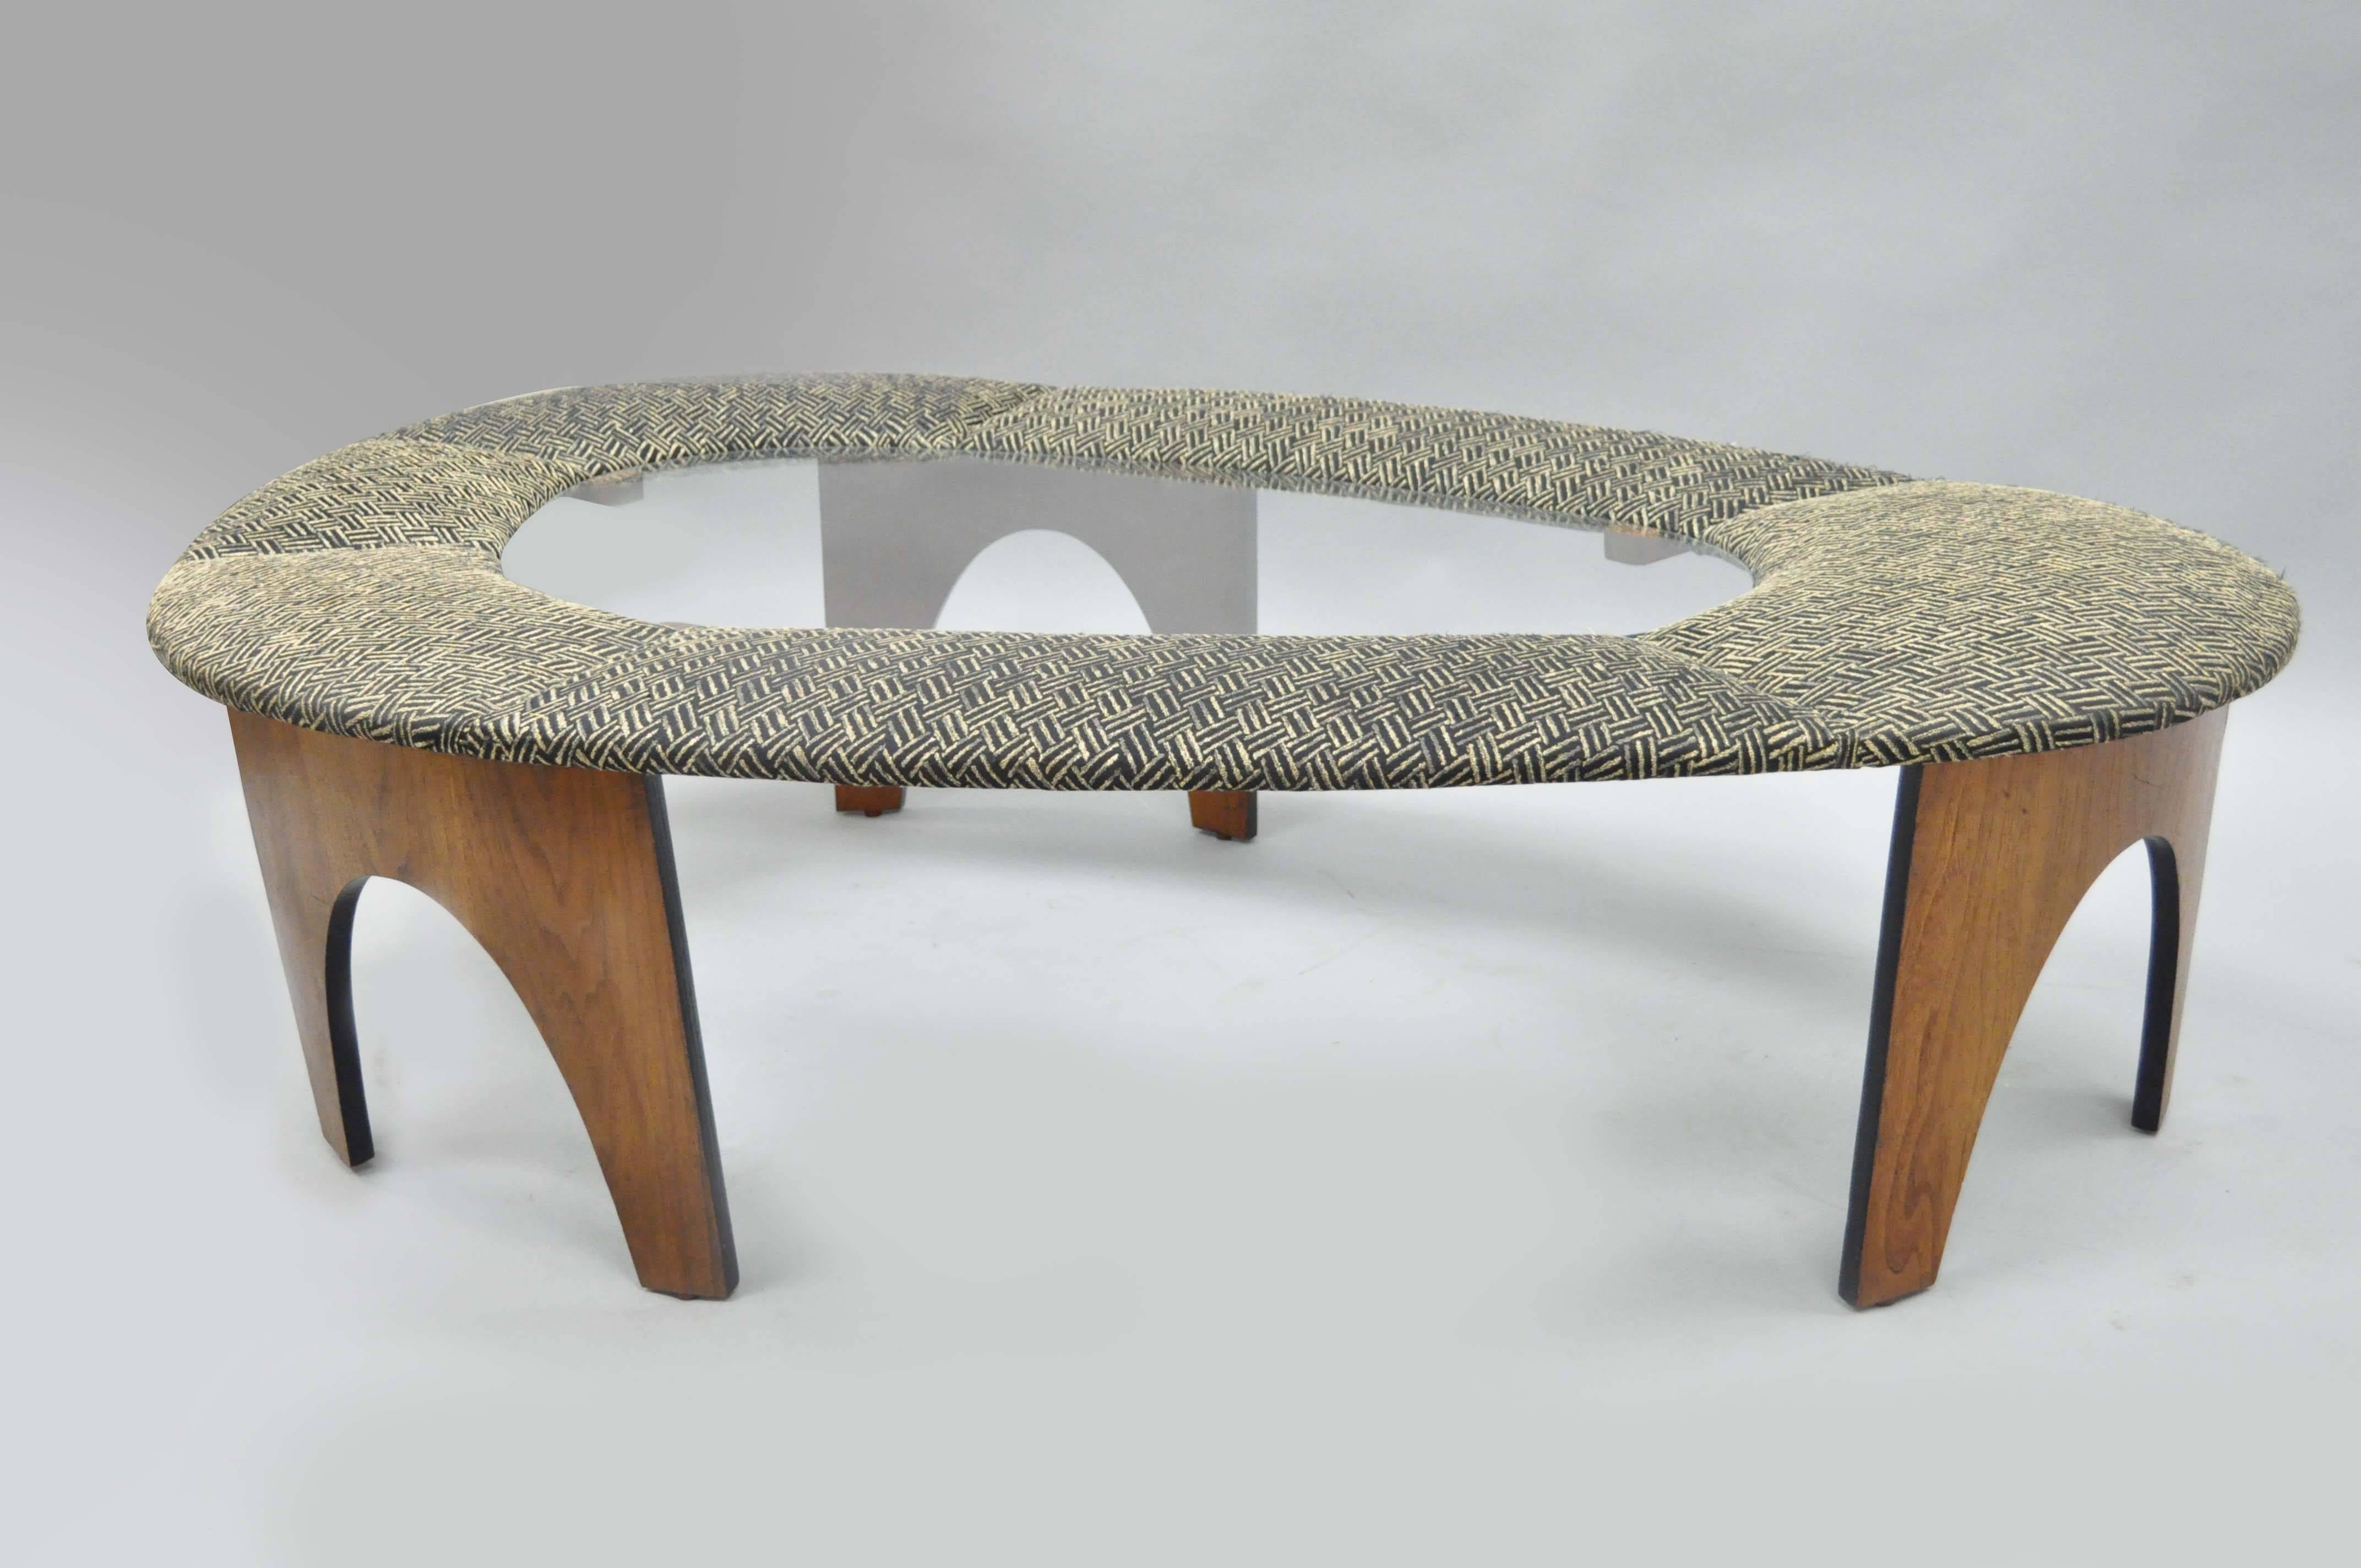 Sehr seltener Mid-Century Modern gewölbter Couchtisch von Henry P. Glass aus der Intimate Island Suite für The Richbilt Furniture Co. Die gewölbten Beine sind aus Walnussfurnier und der Rahmen aus gebogenem Sperrholz, die Maserung des Holzes ist